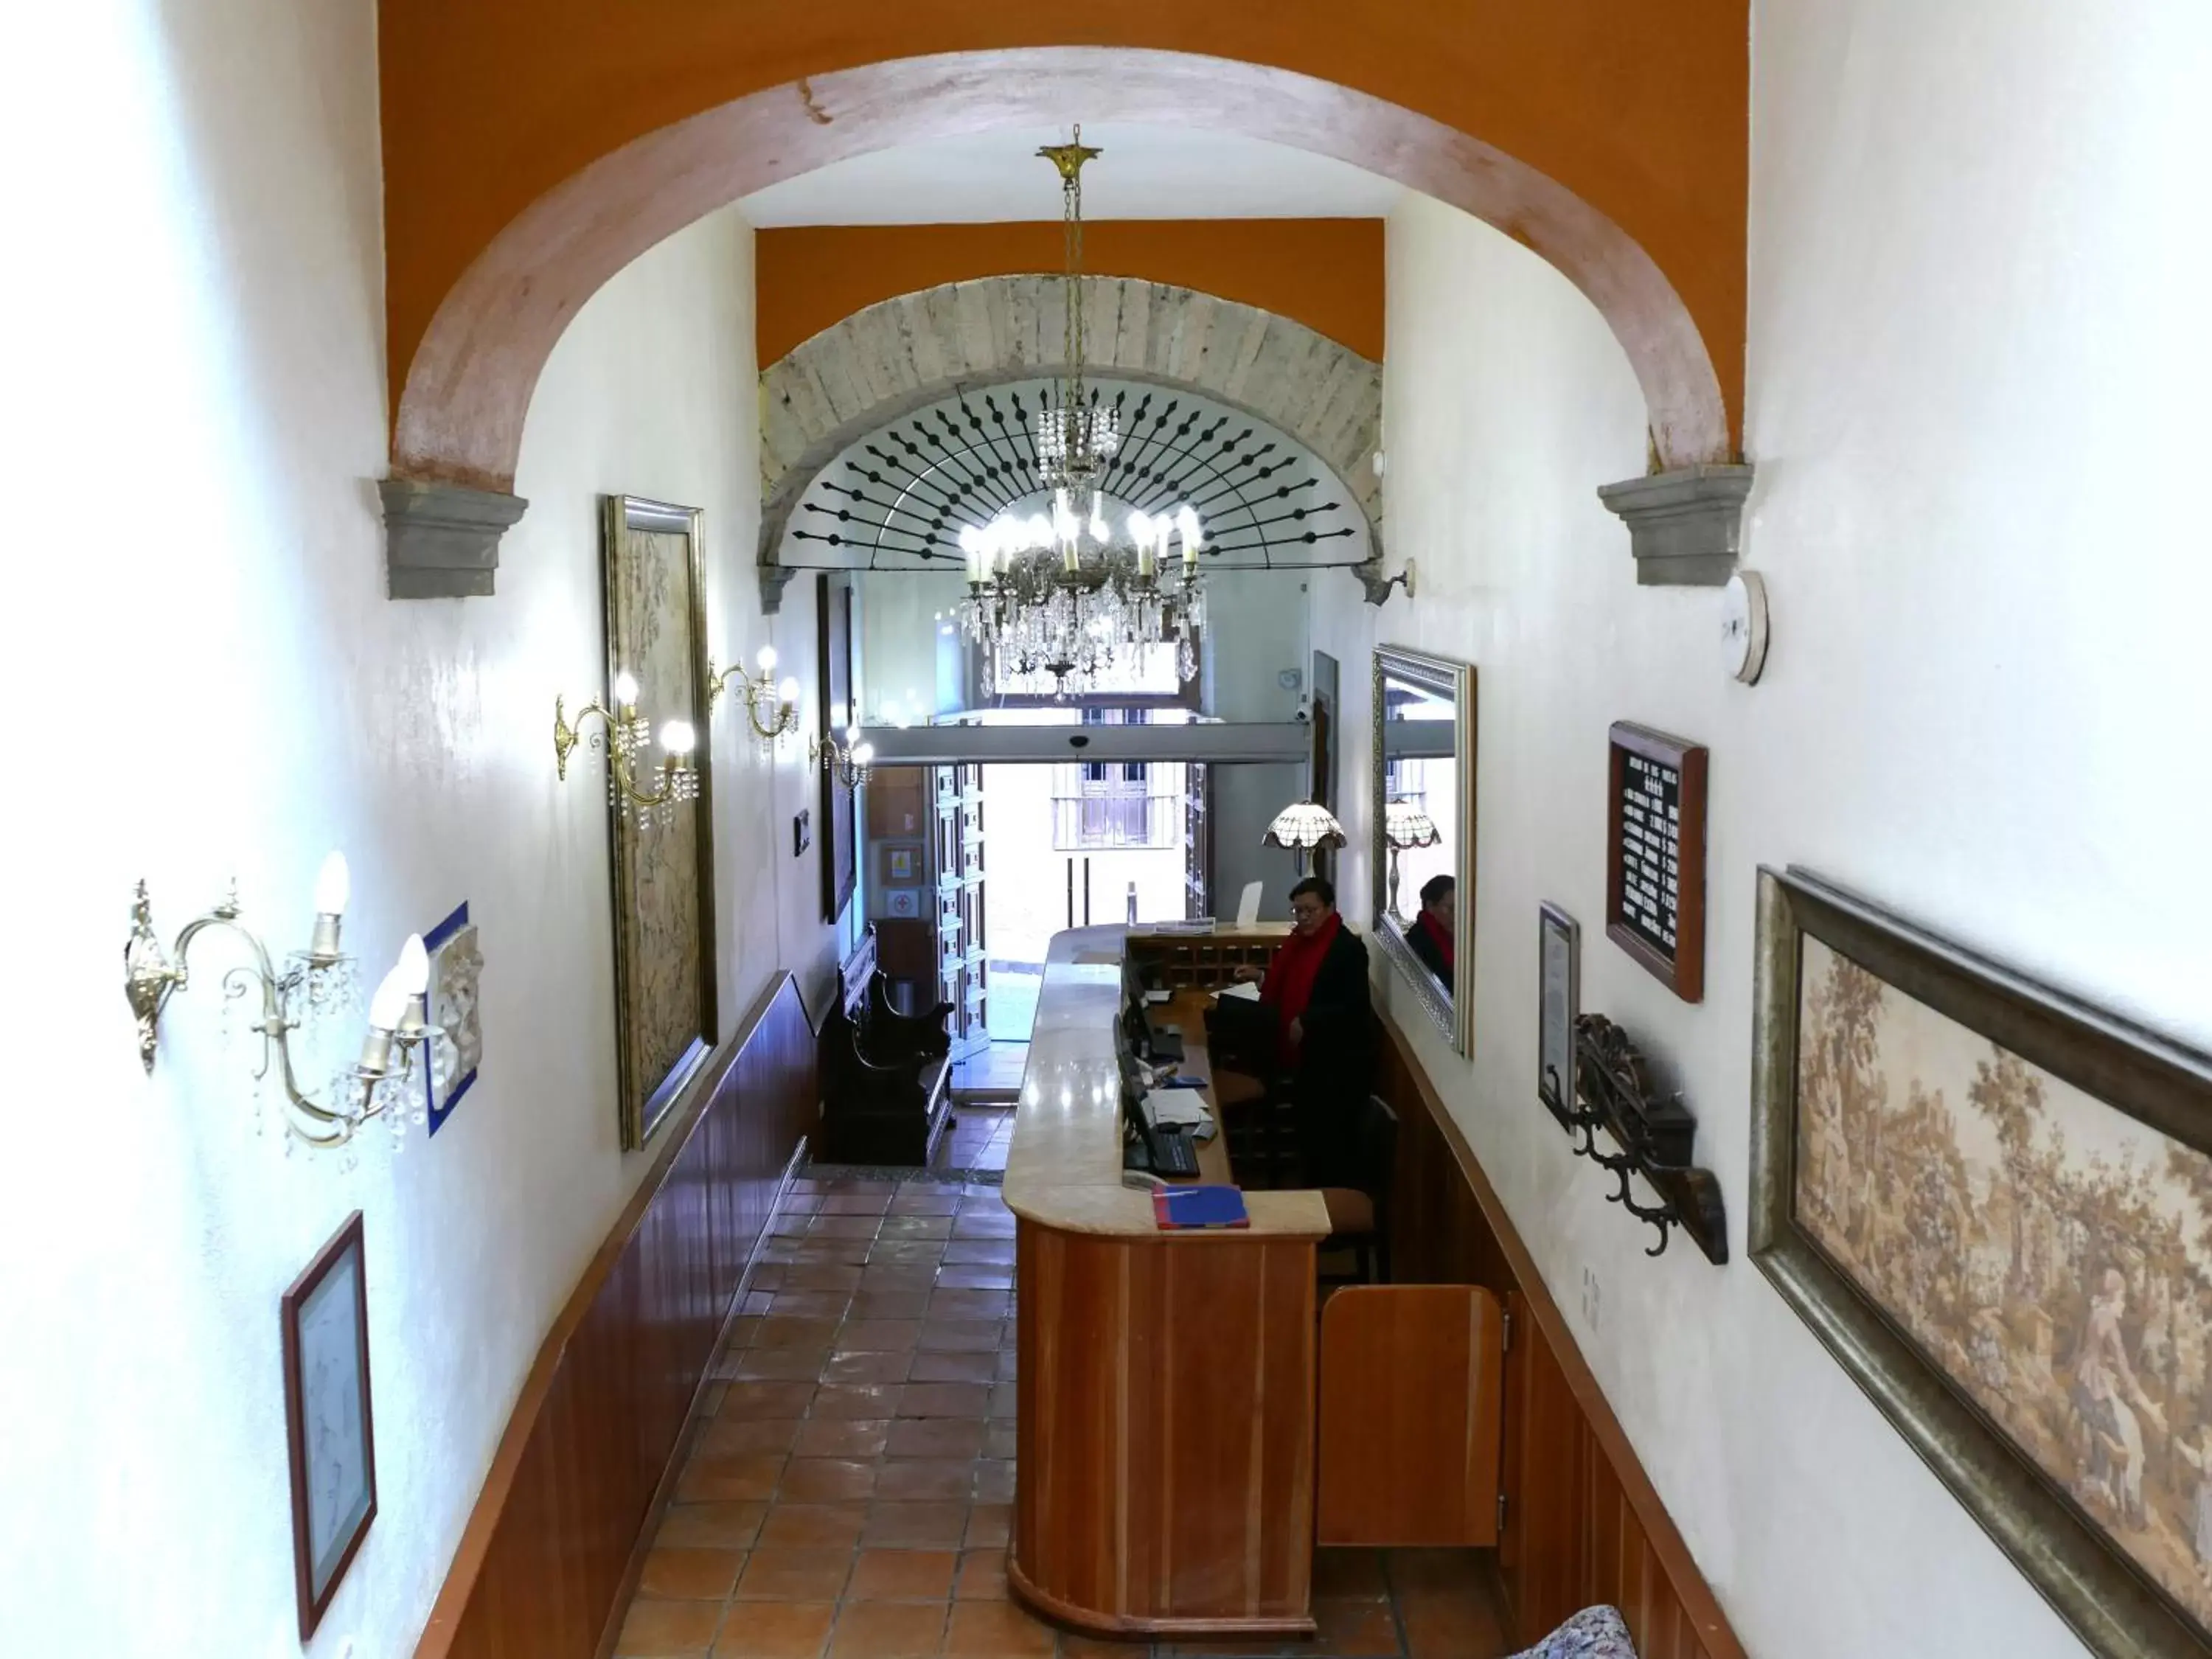 Lobby or reception, Restaurant/Places to Eat in El Meson de los Poetas